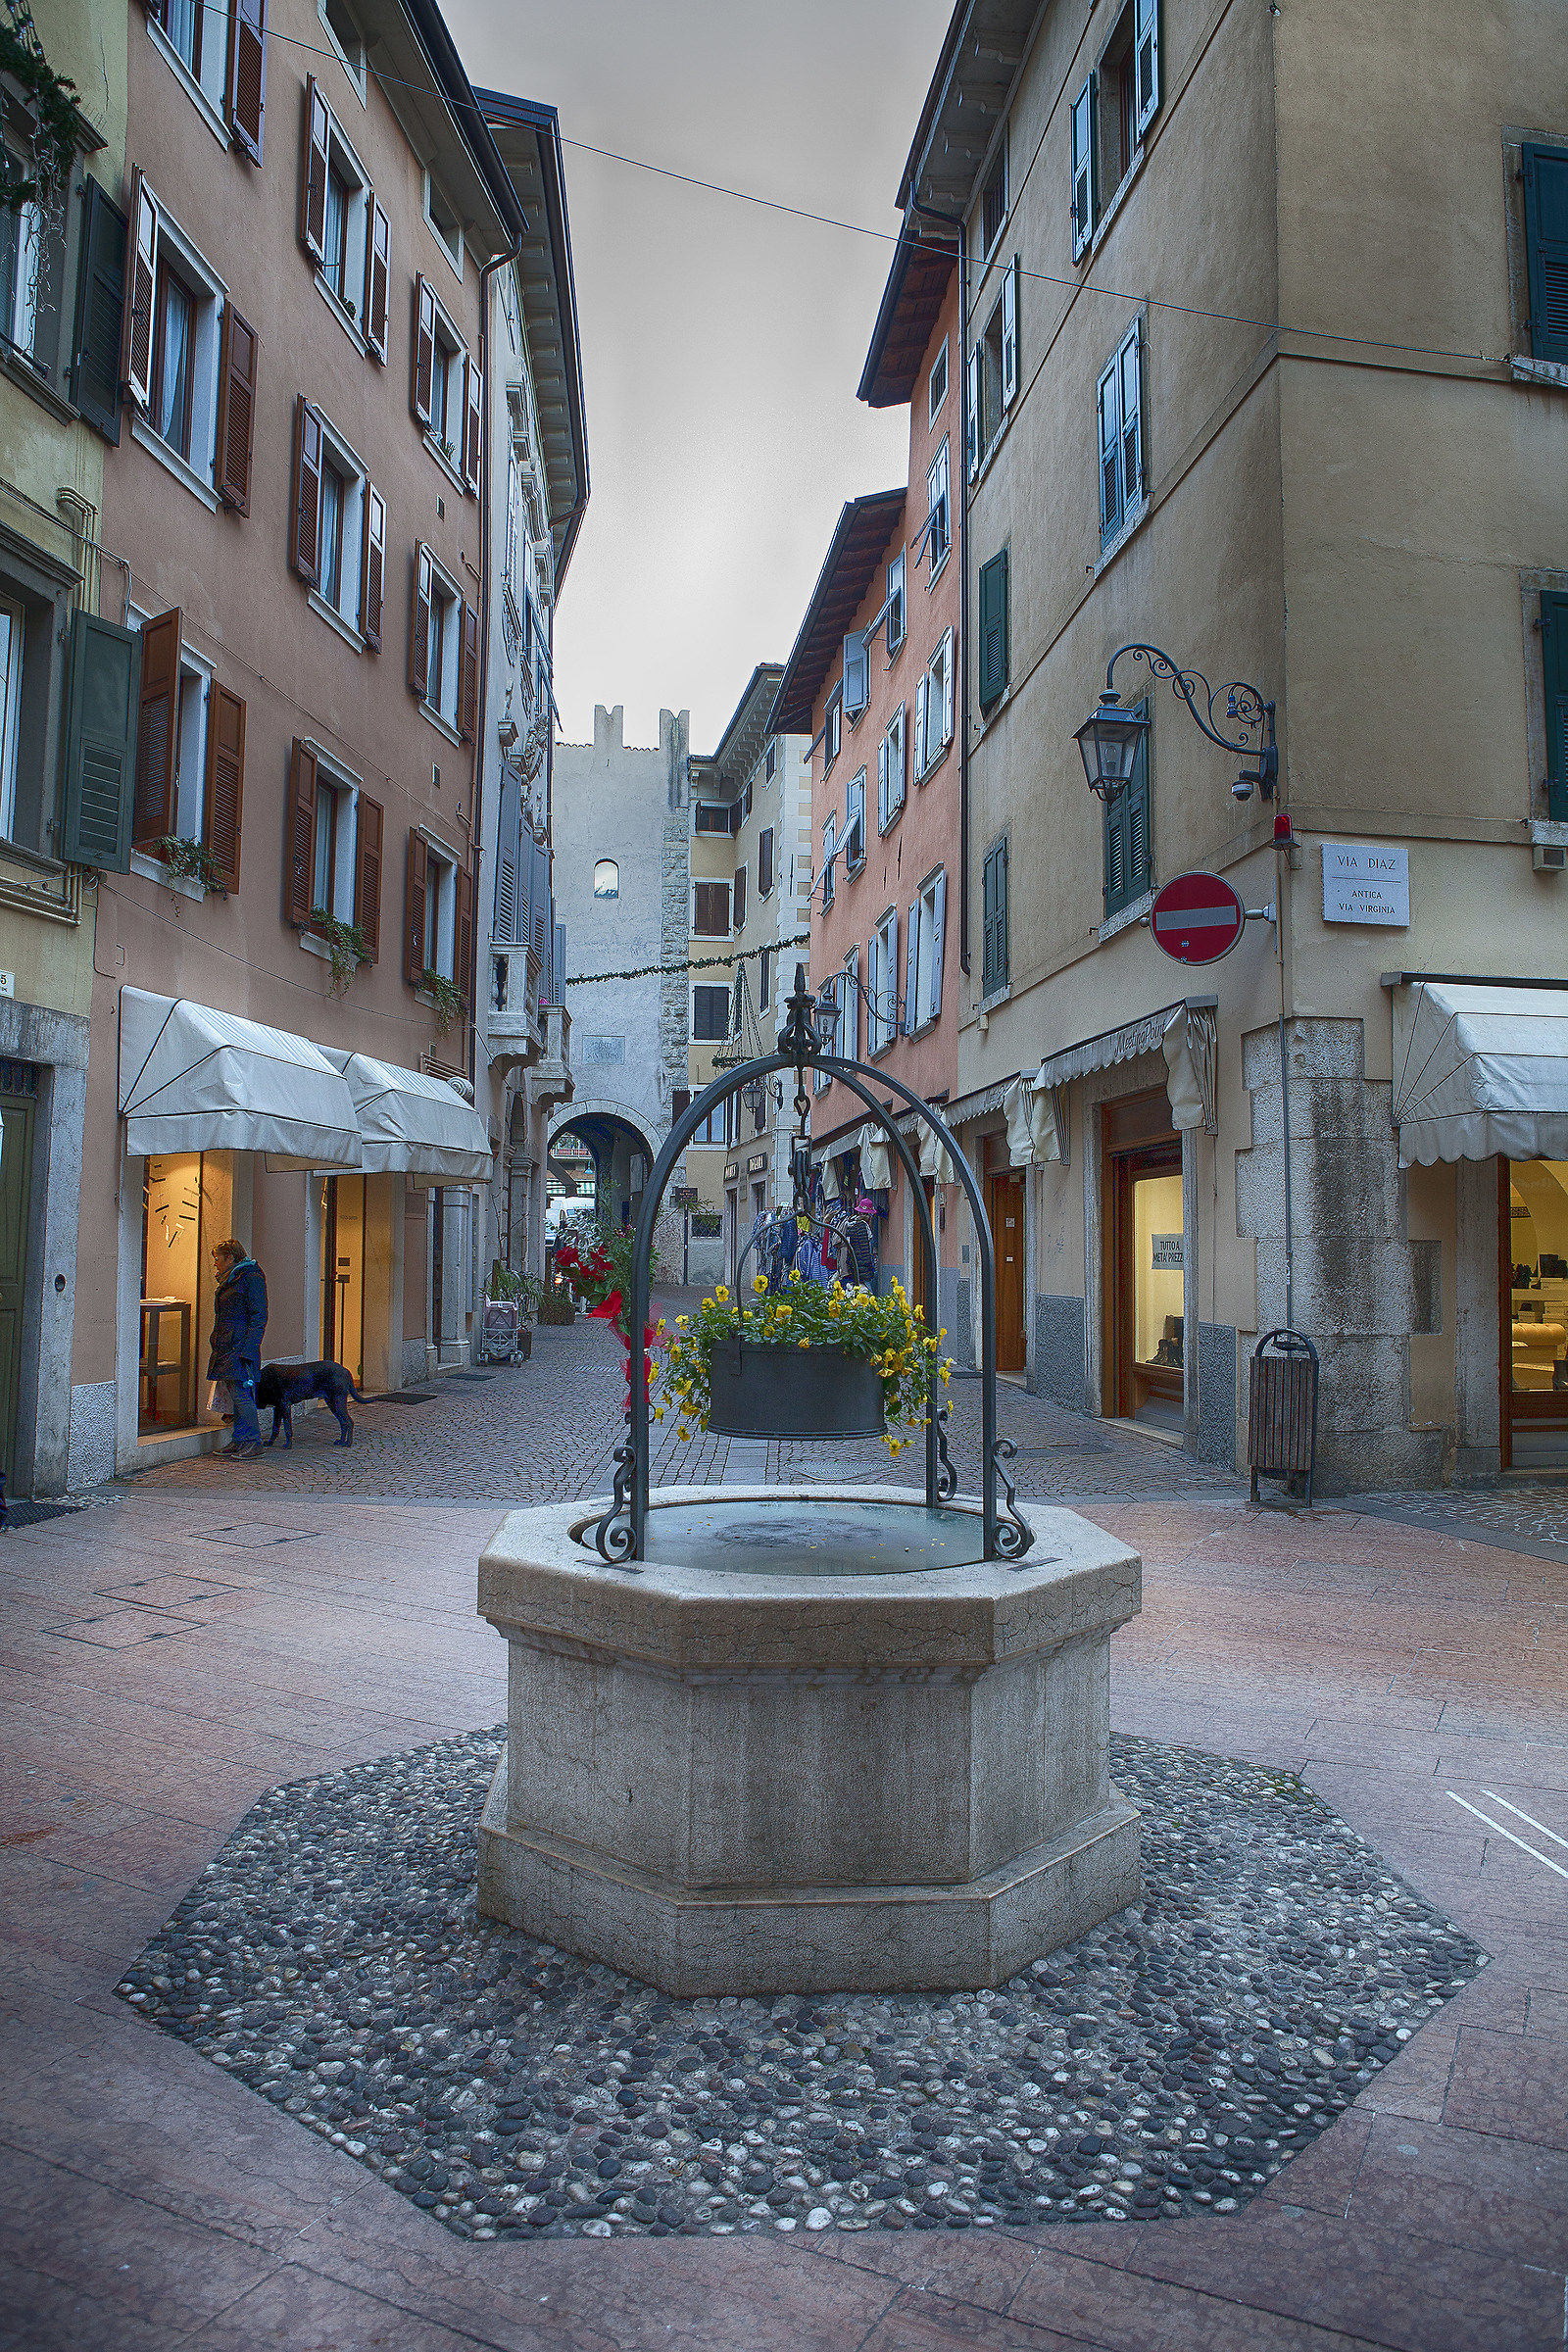 One glimpse of Riva del Garda...